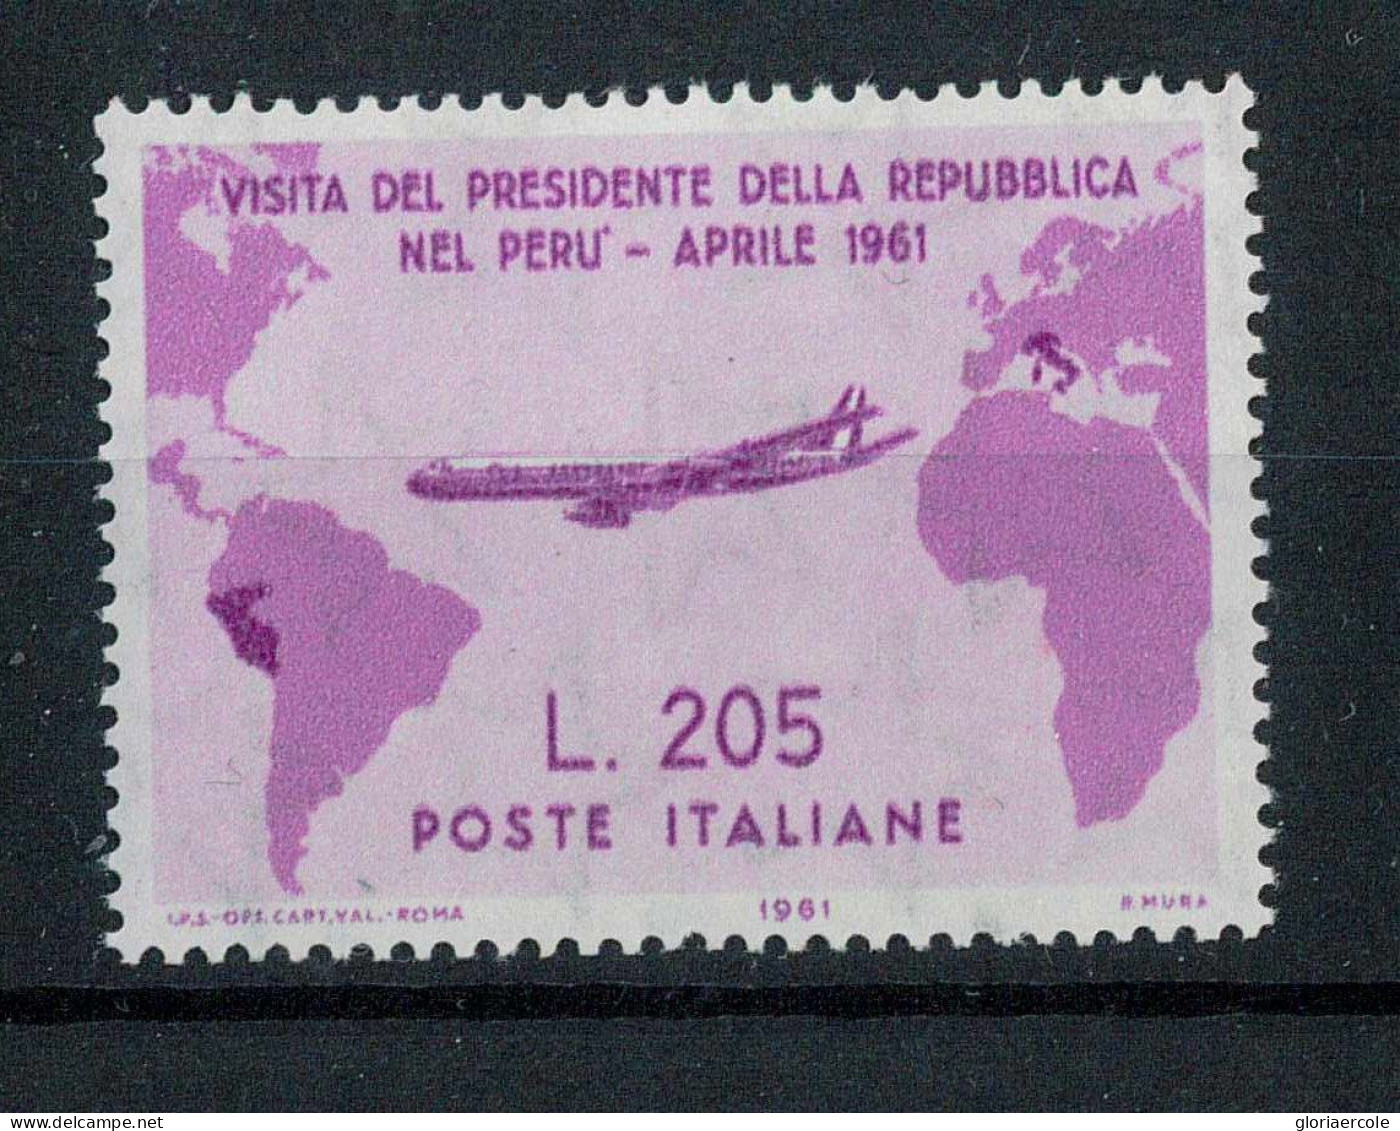 P2717 - REPUBBLICA ITALIANA , GRONCHI ROSA 1961, BELLISSIMO FRANCOBOLLO NUOVO, CERTIFICFDATO CILIO. - Sicily